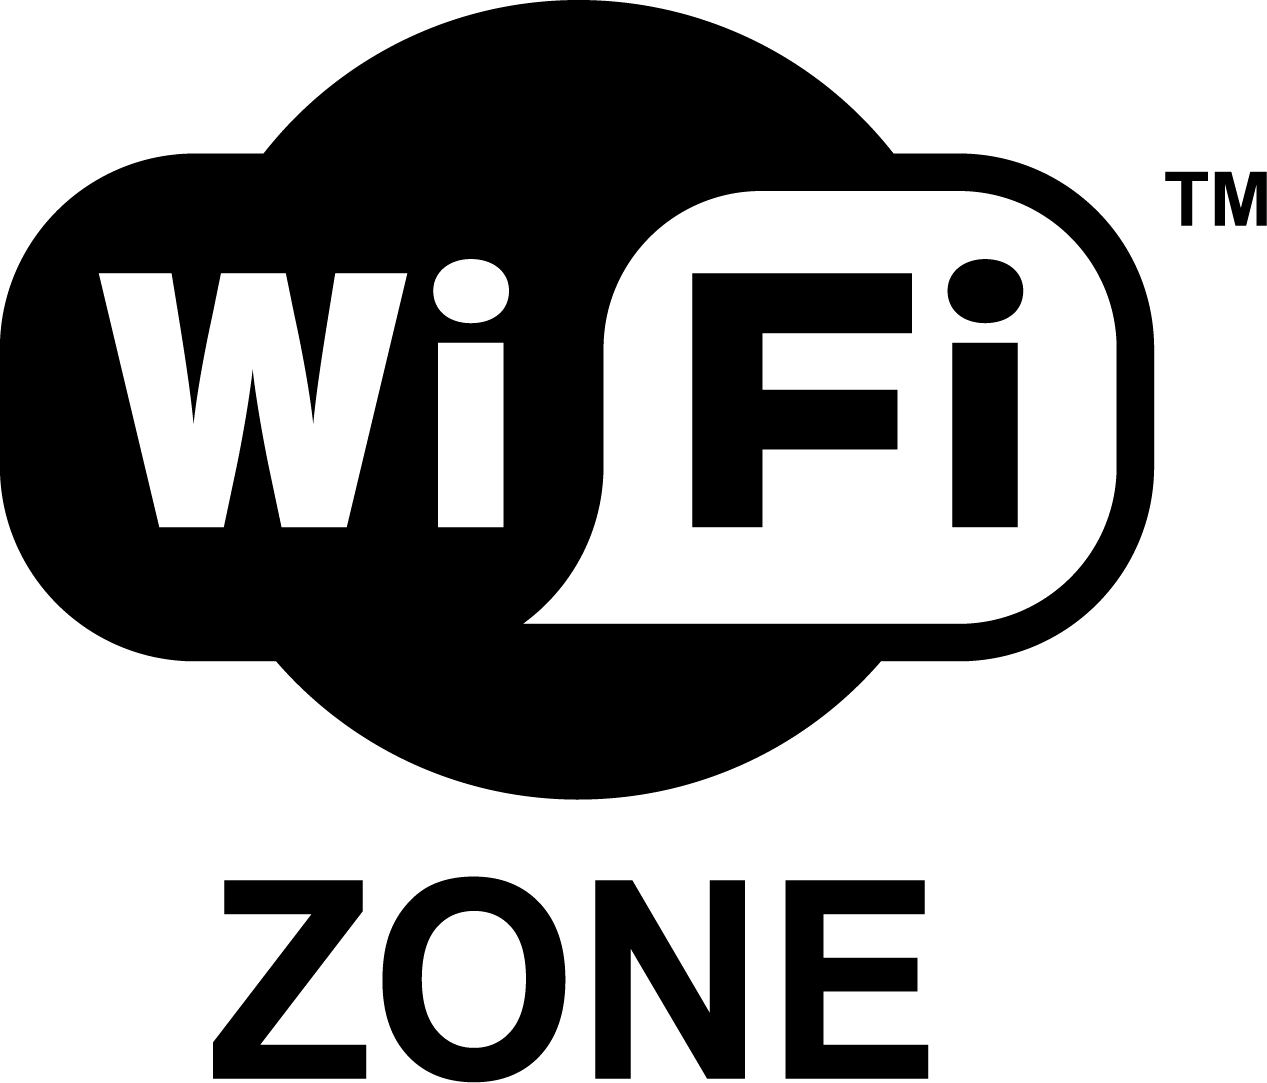 Wi-Fi is Dead, Long Live Wi-Fi